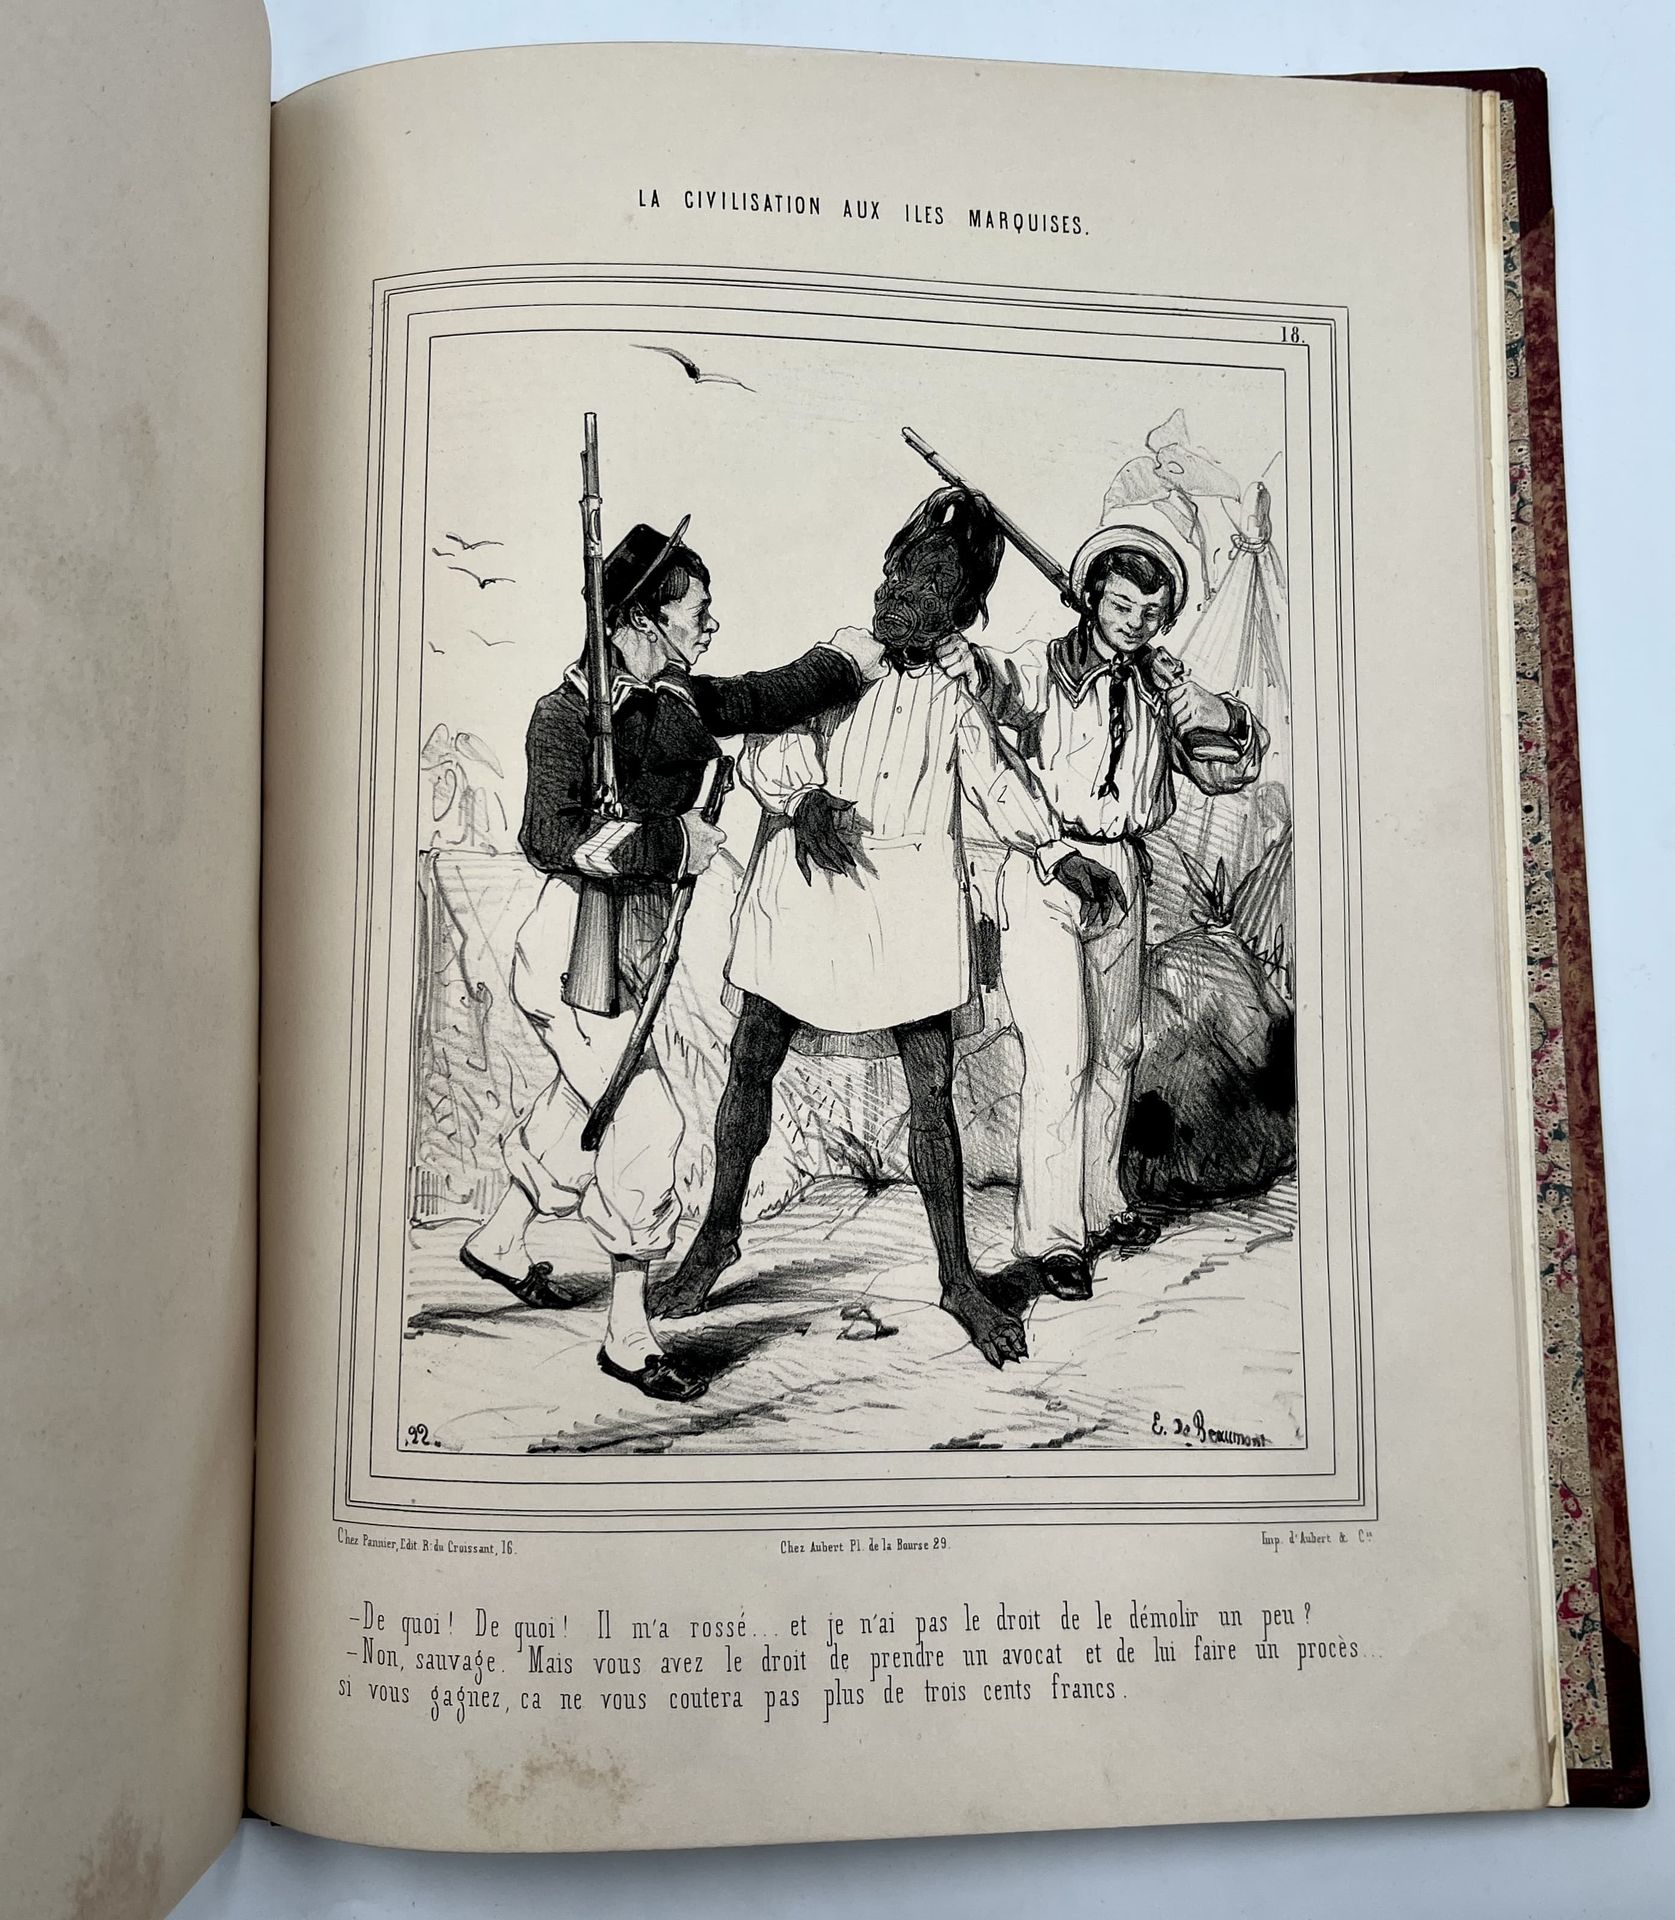 BEAUMONT, Édouard de 喜剧专辑 - 侯爵群岛的文明。巴黎，在《娱乐杂志》和《小杂志》的办公室，[1843]。小对开本(330 x 247 m&hellip;